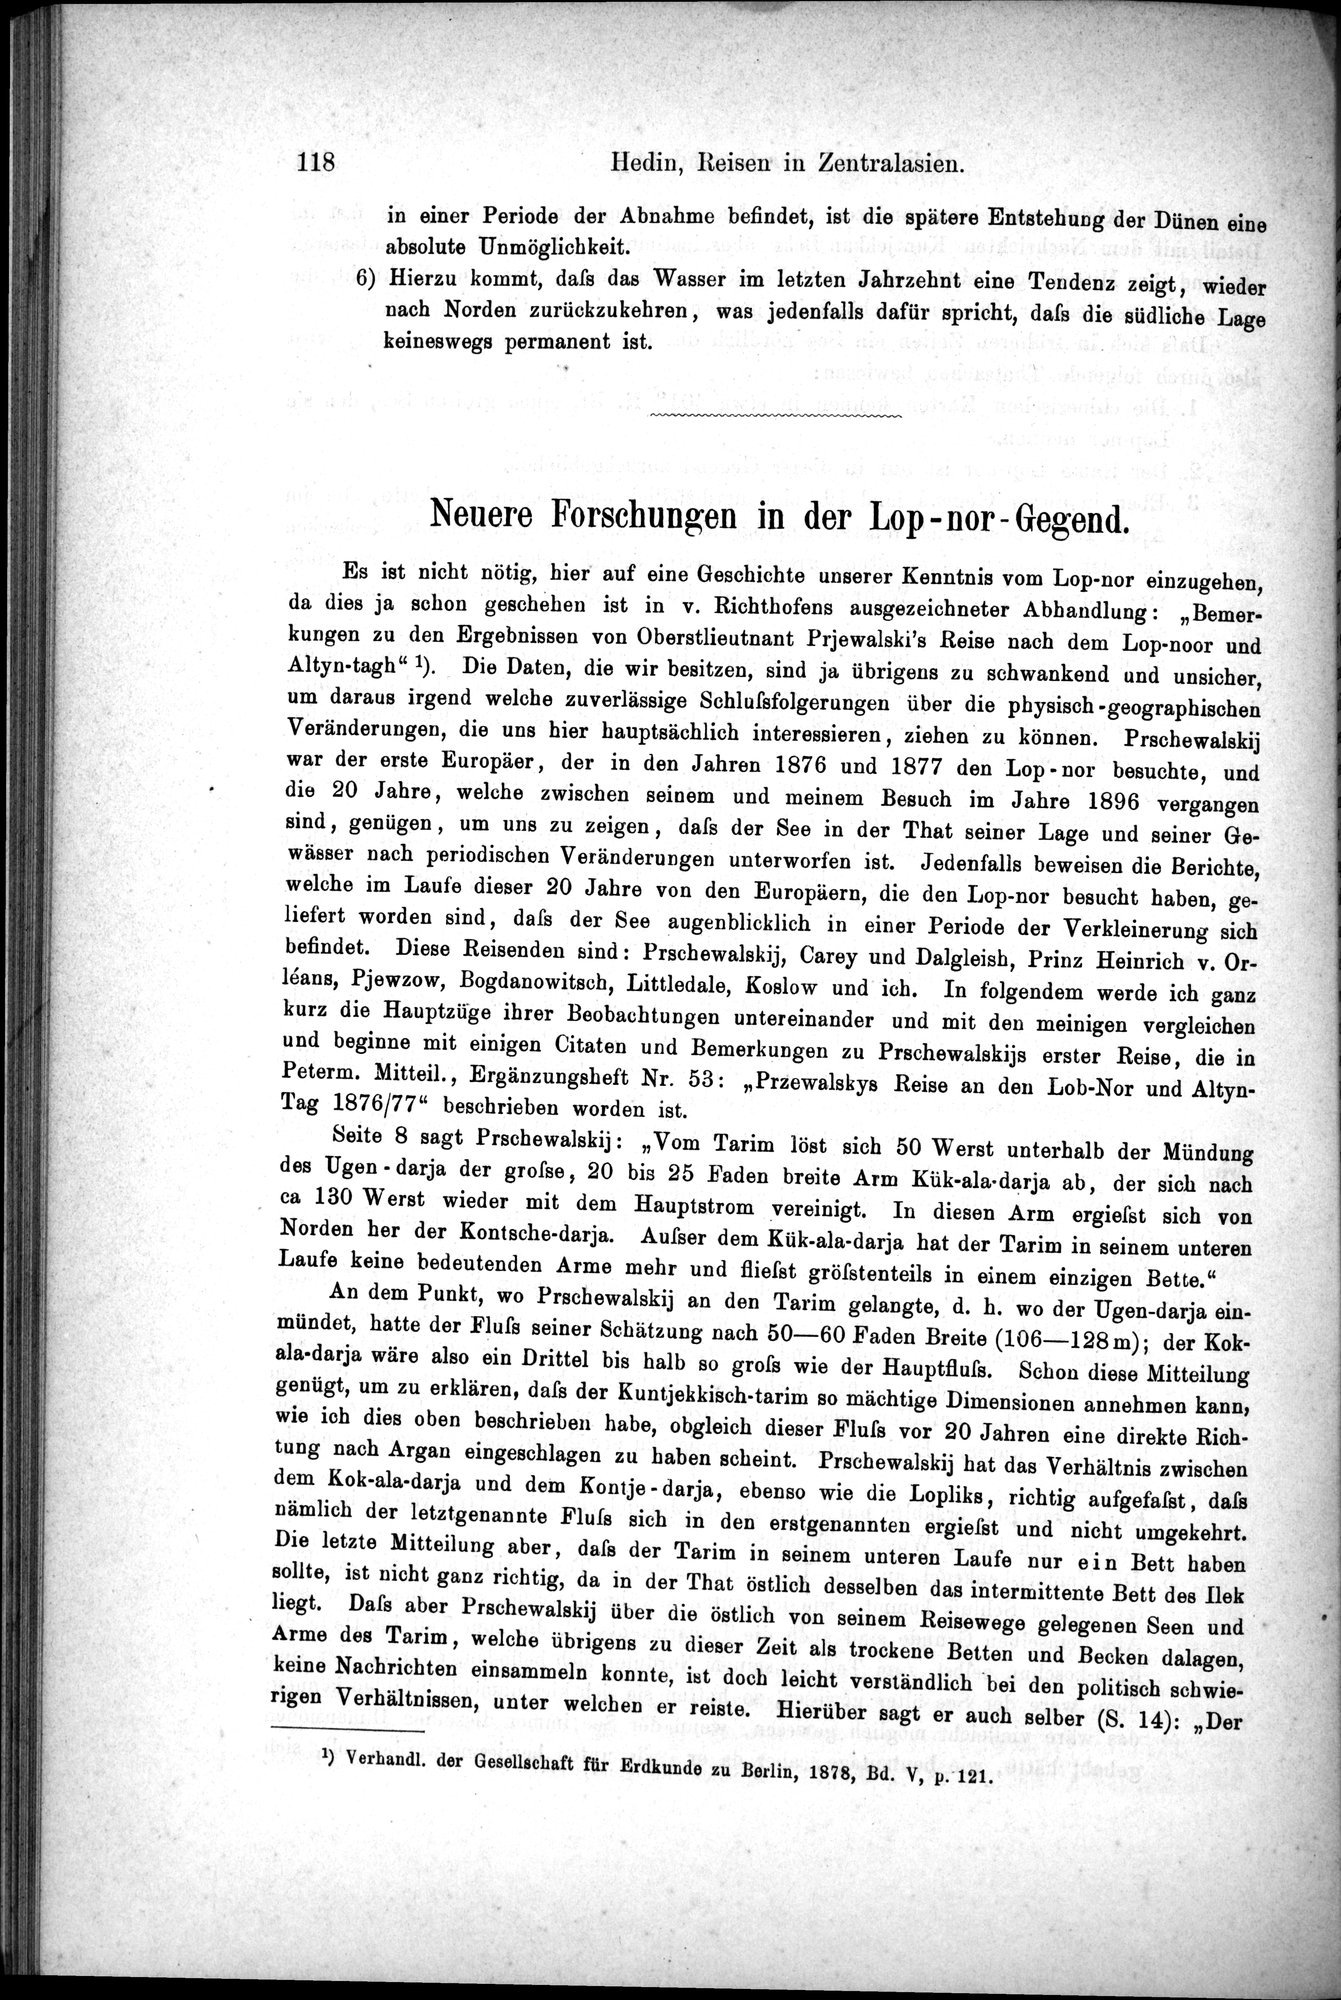 Die Geographische-Wissenschaftlichen Ergebnisse meiner Reisen in Zentralasien, 1894-1897 : vol.1 / Page 130 (Grayscale High Resolution Image)